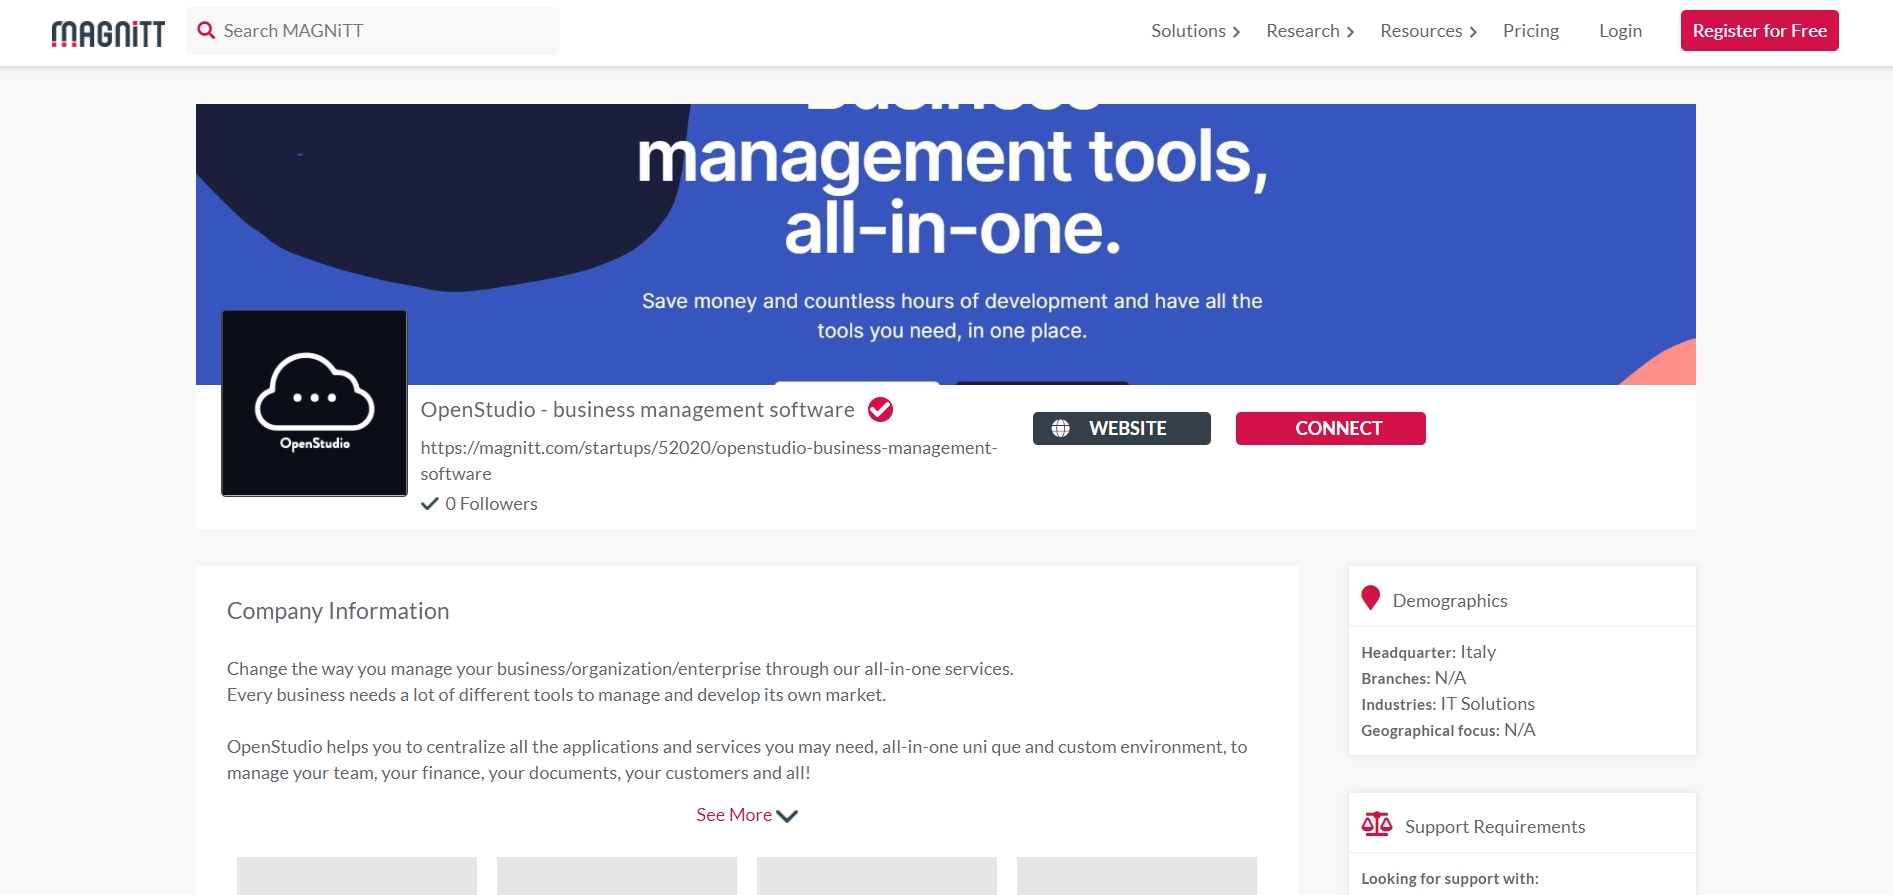 OpenStudio - business management software